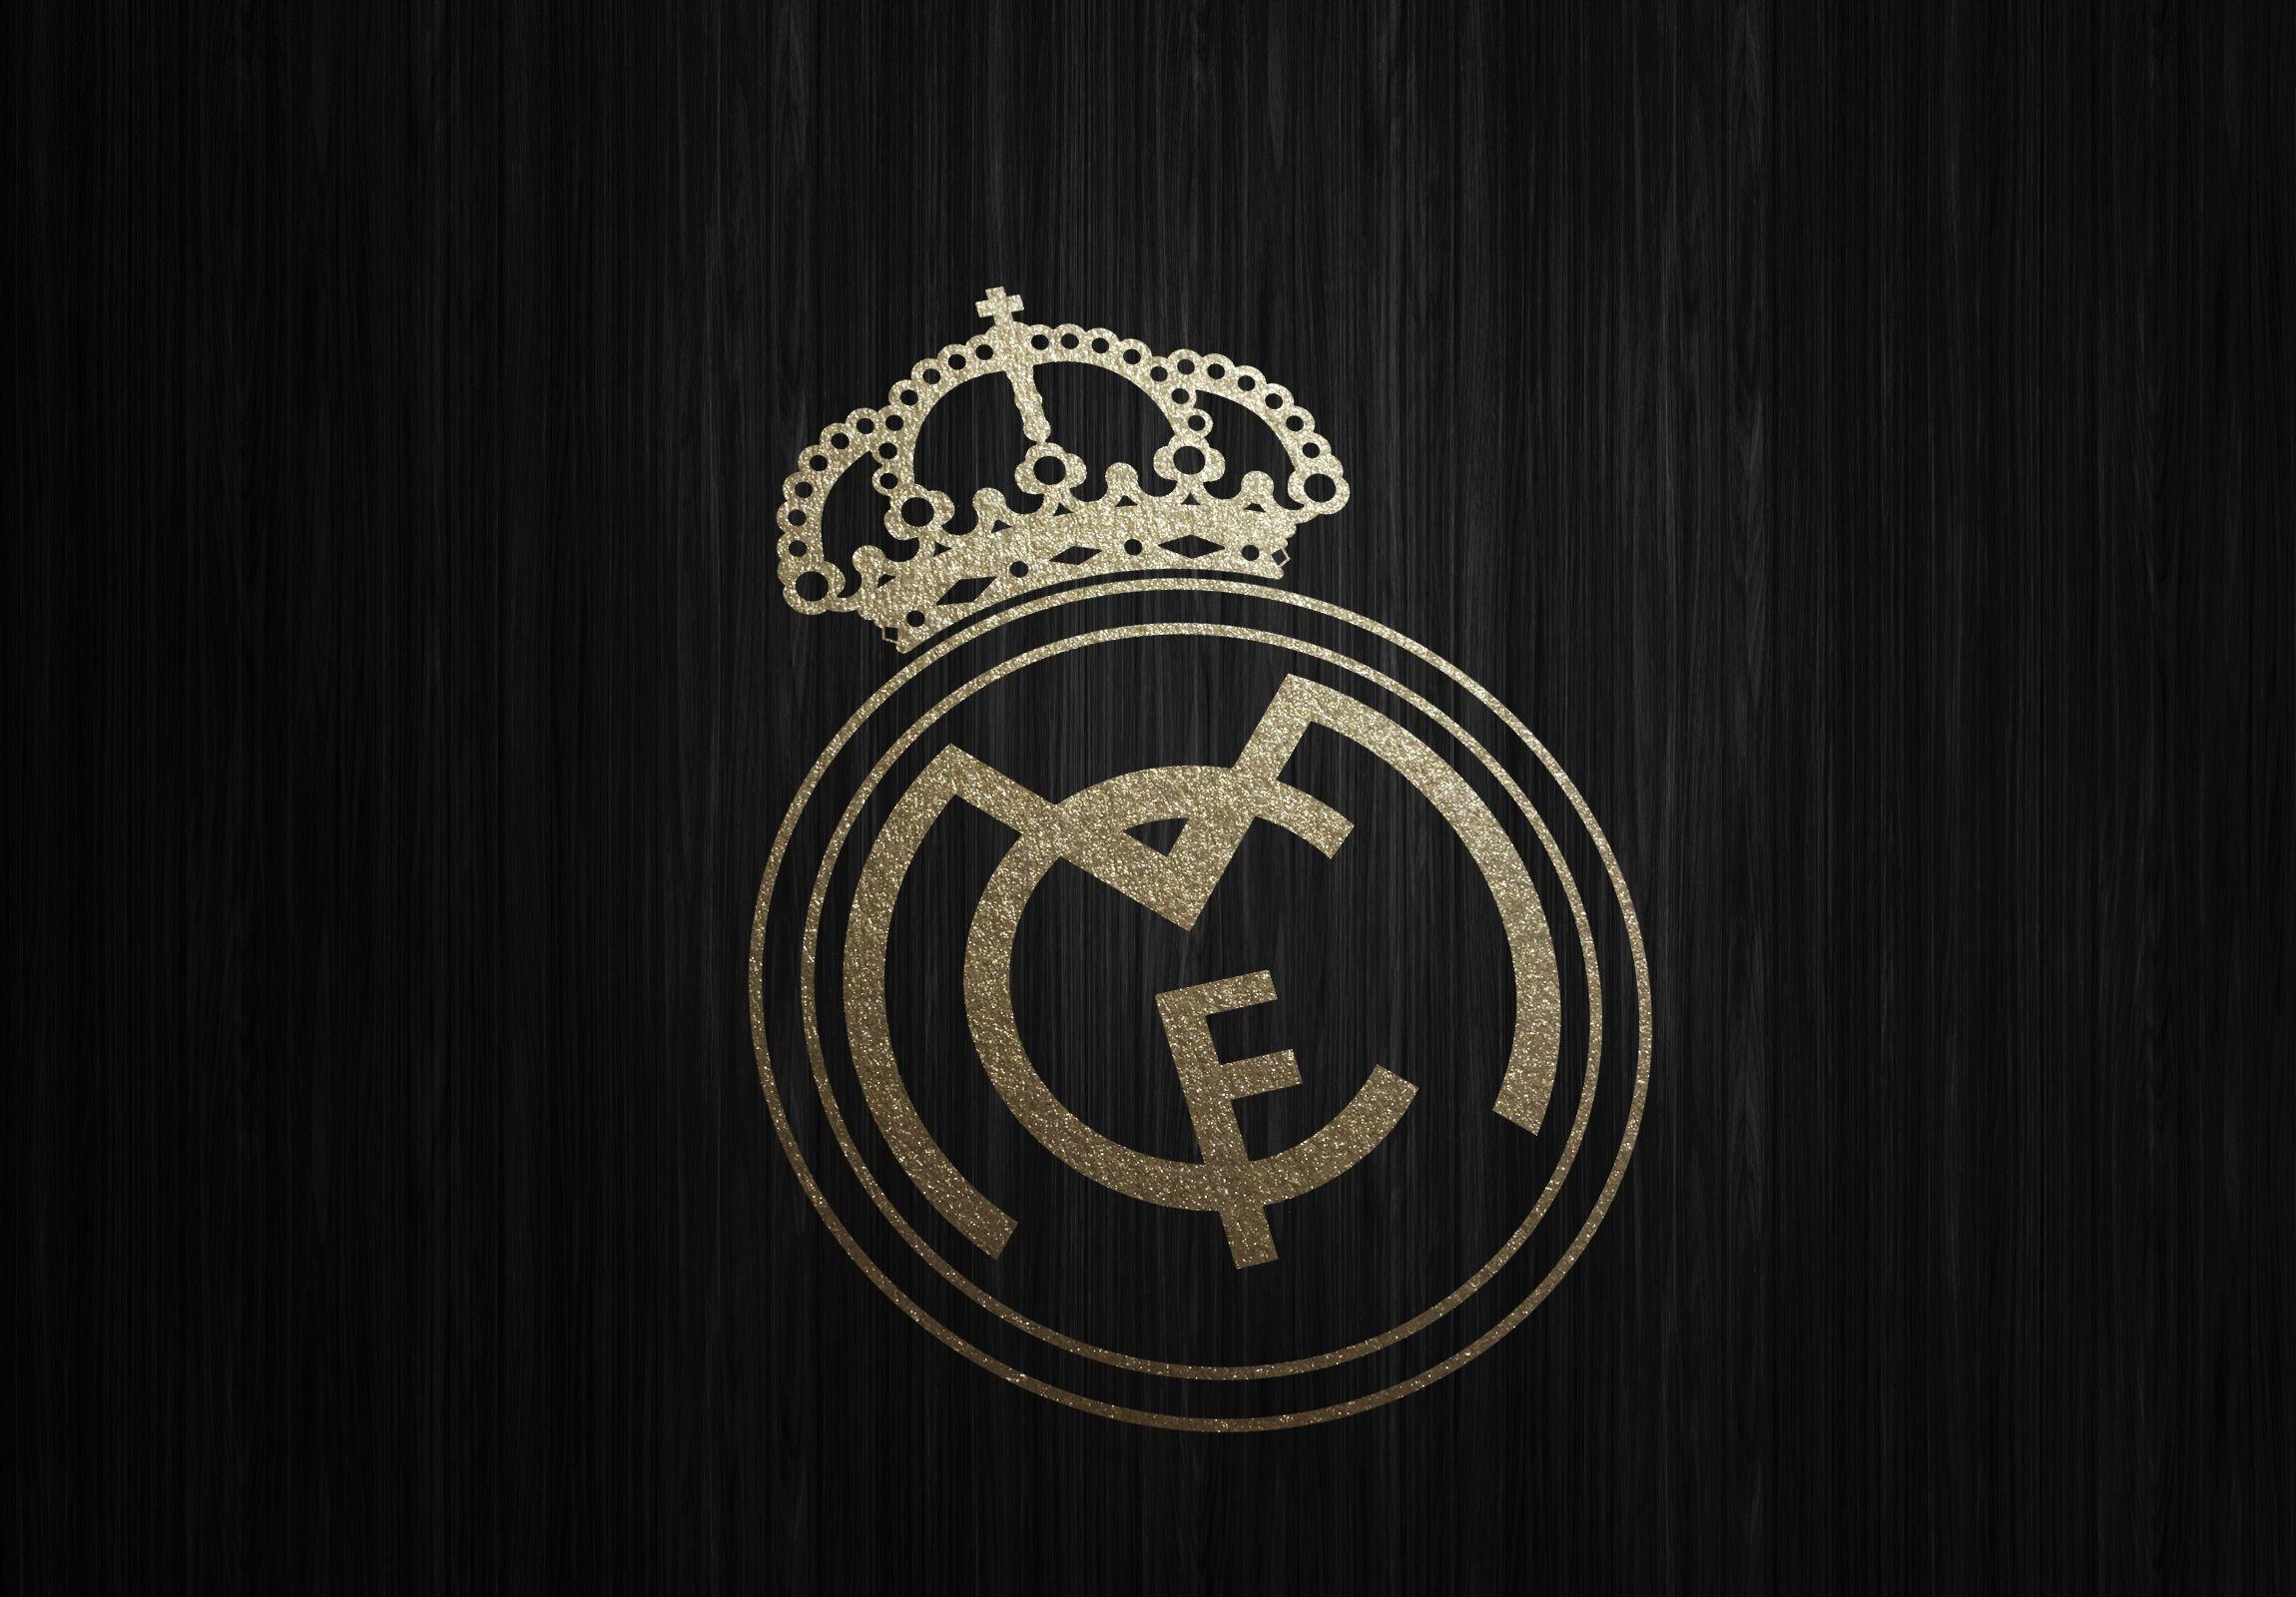 Real Madrid Wallpaper Wonderful I5U WALLPAPERUN.COM